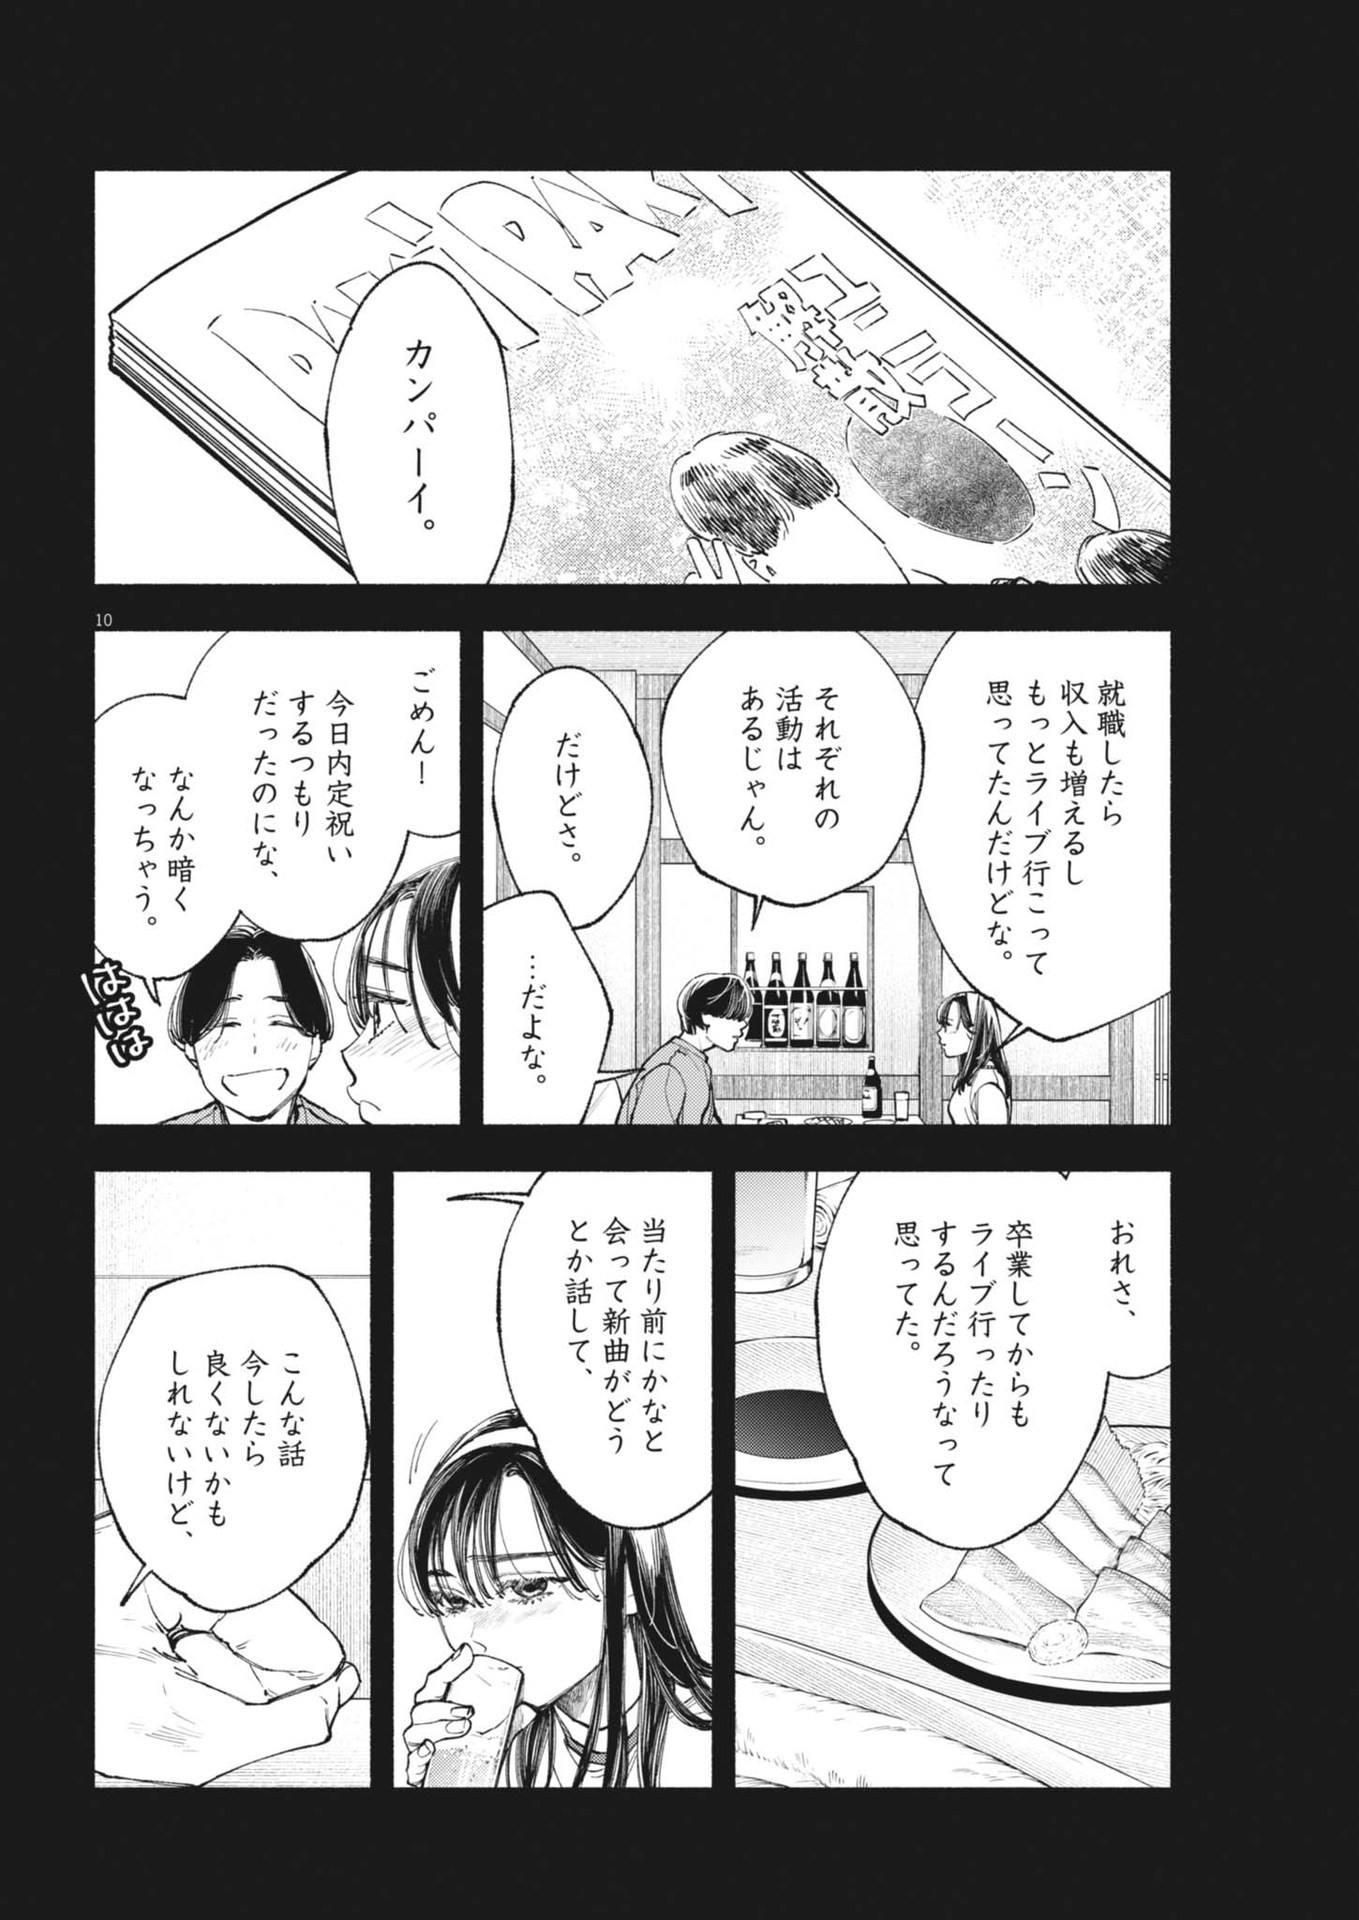 Konoyo wa Tatakau Kachi ga Aru  - Chapter 26 - Page 10